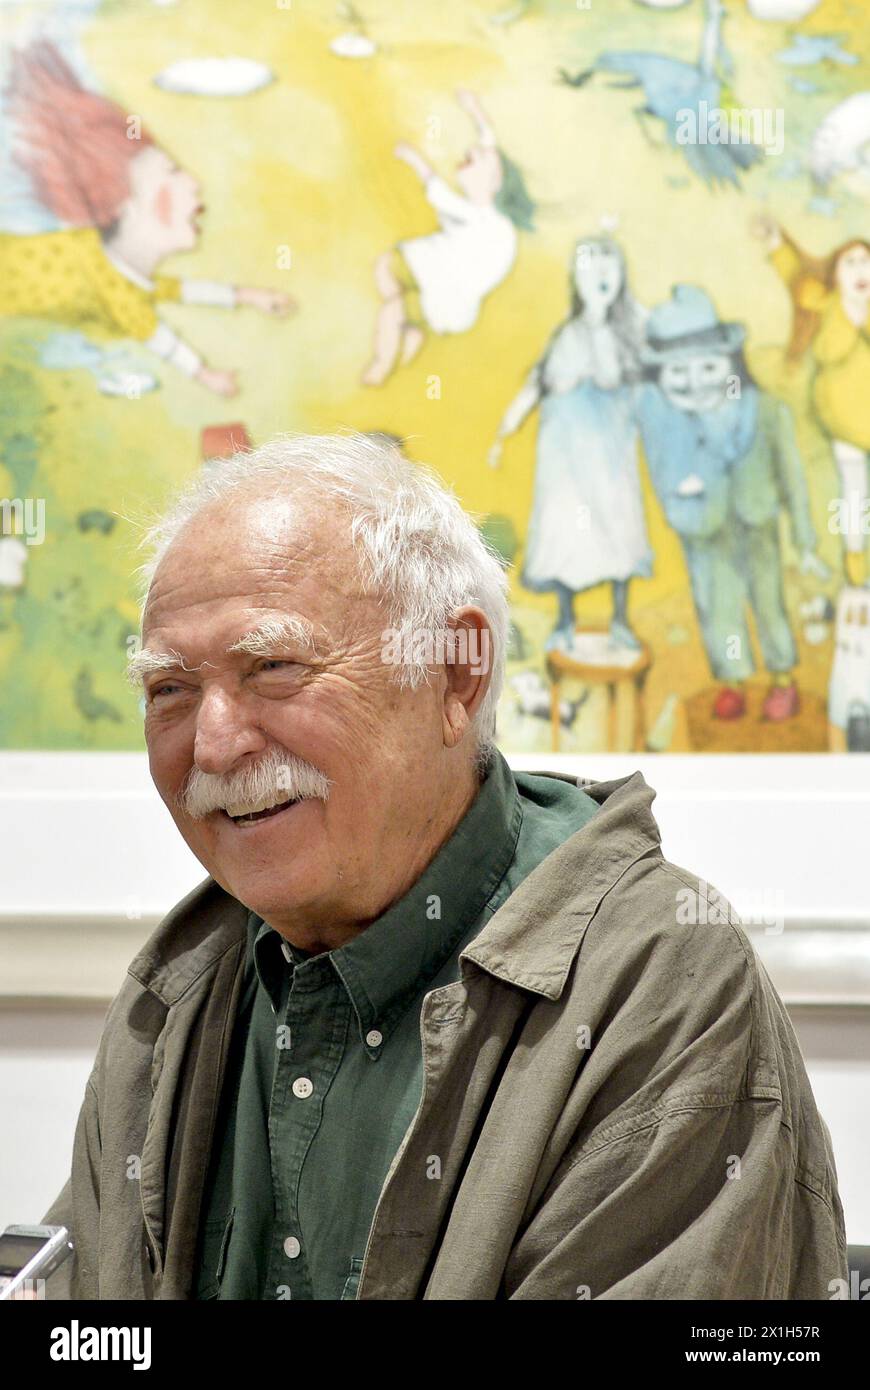 Janosch durante l'inaugurazione della mostra il 2 giugno 2016 a Vienna, Austria. Janosch (nato come Horst Eckert) è uno dei più noti autori e illustratori di libri per bambini tedeschi. IMMAGINE: Janosch - 20160602 PD4590 - Rechteinfo: Rights Managed (RM) Foto Stock